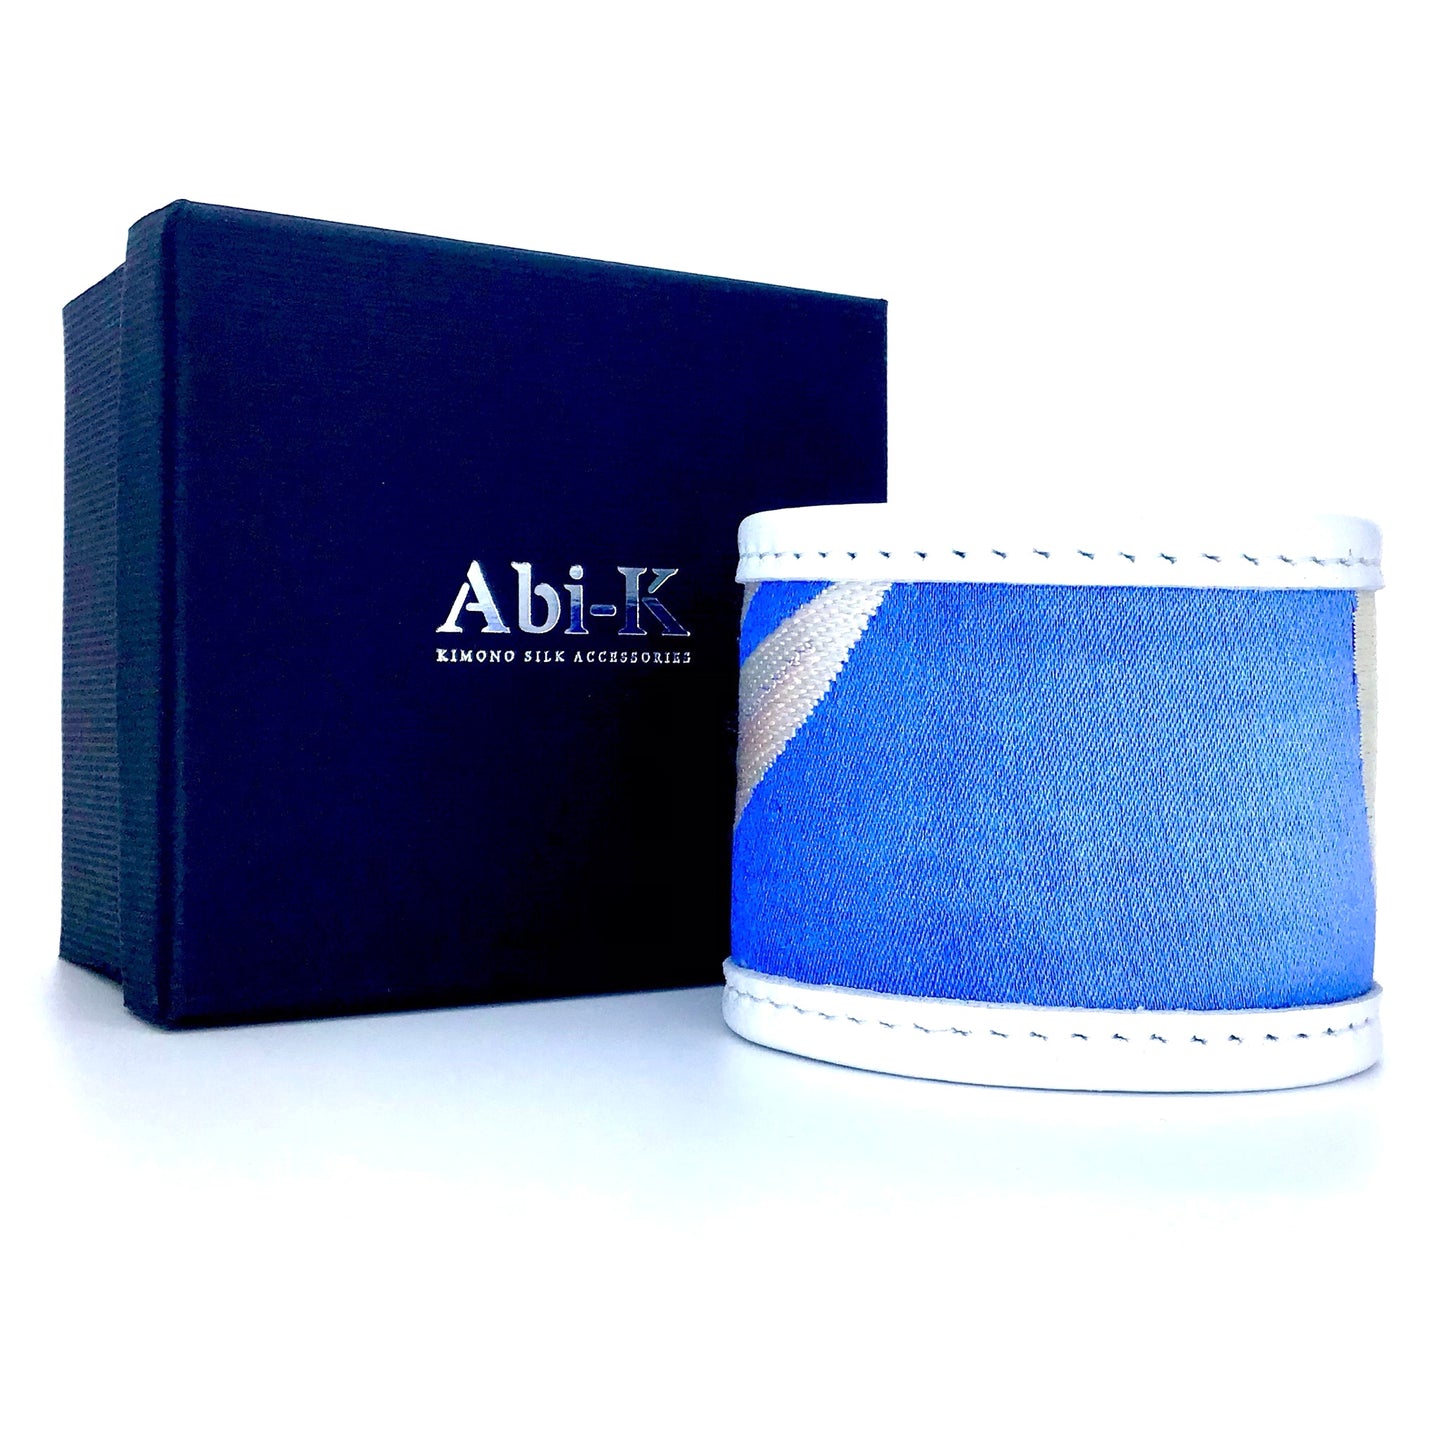 Abi-K Cuff ‘That Blue!’ 2/2